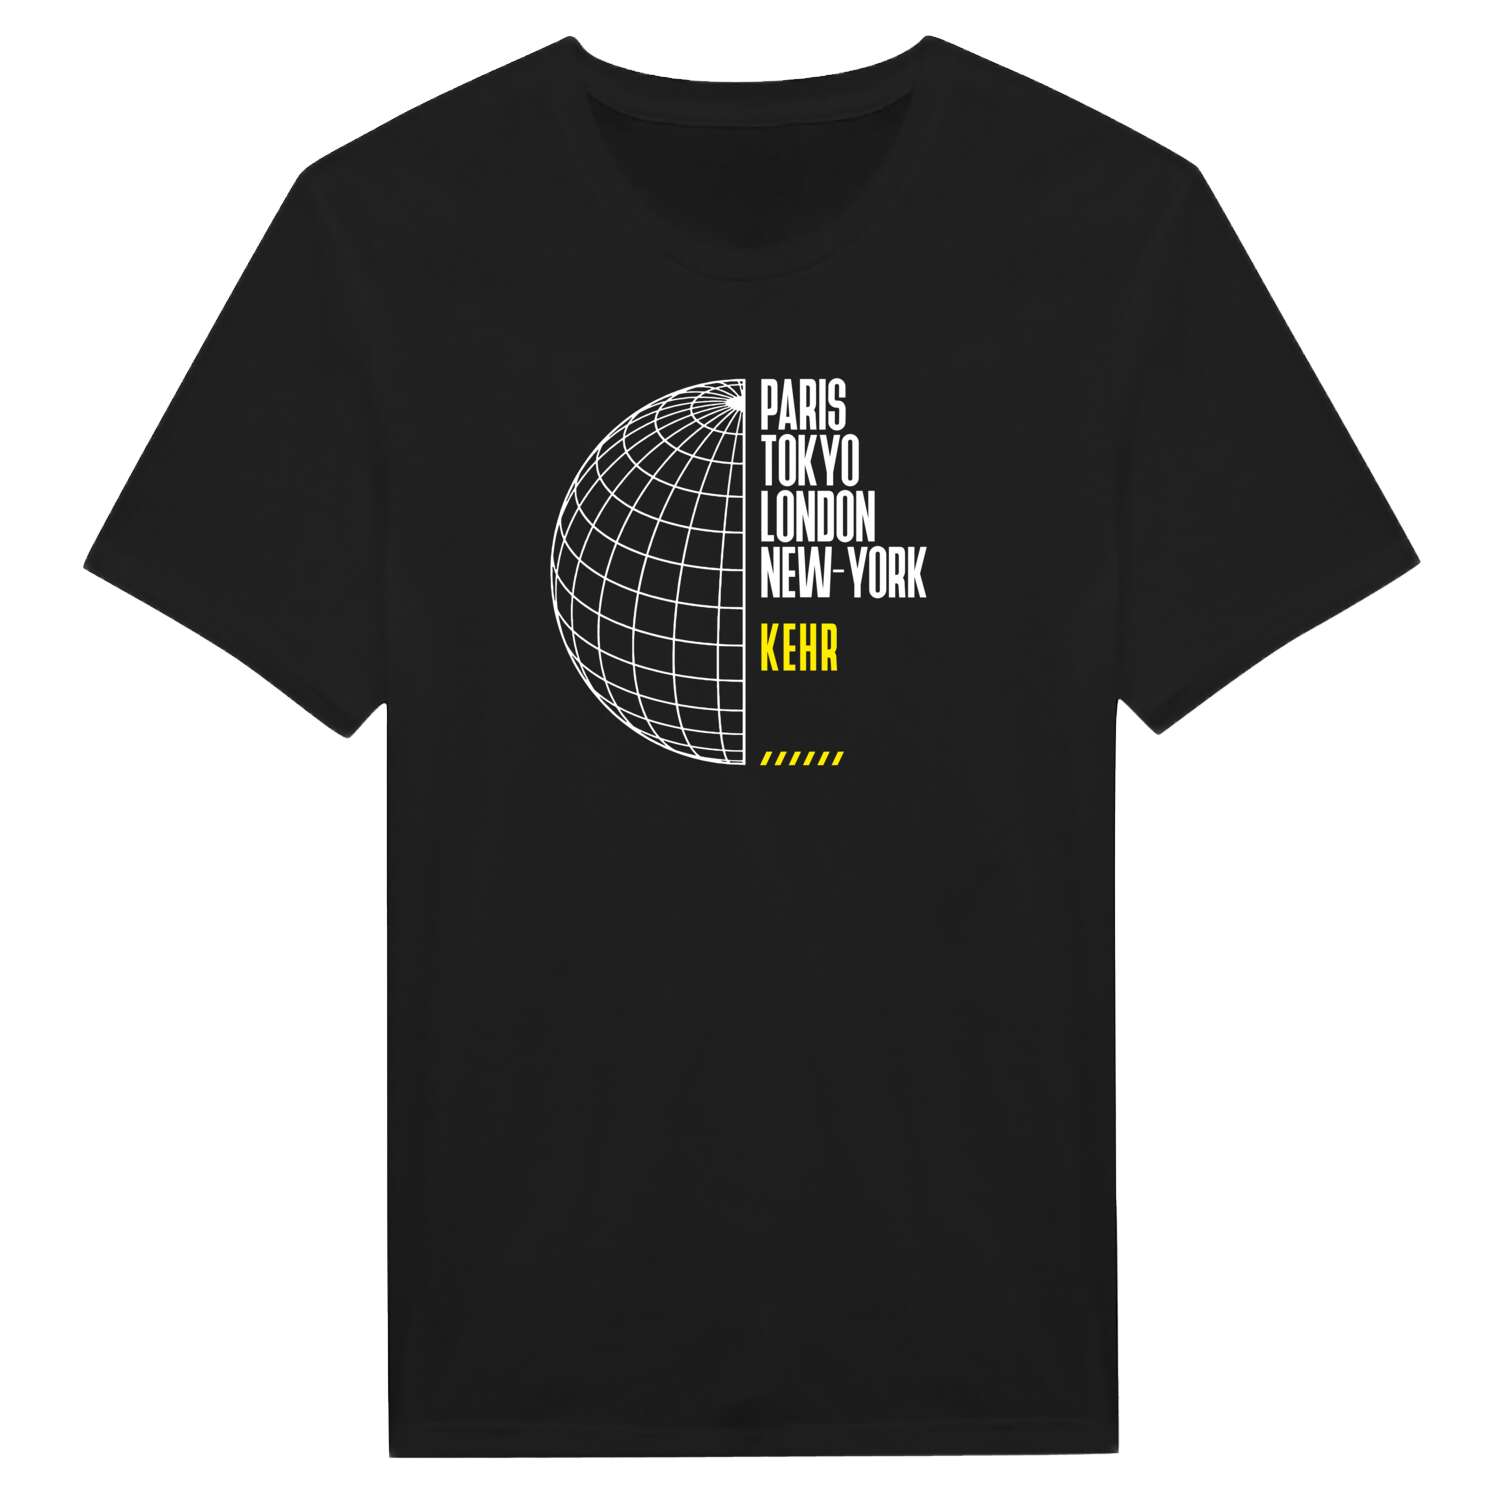 Kehr T-Shirt »Paris Tokyo London«